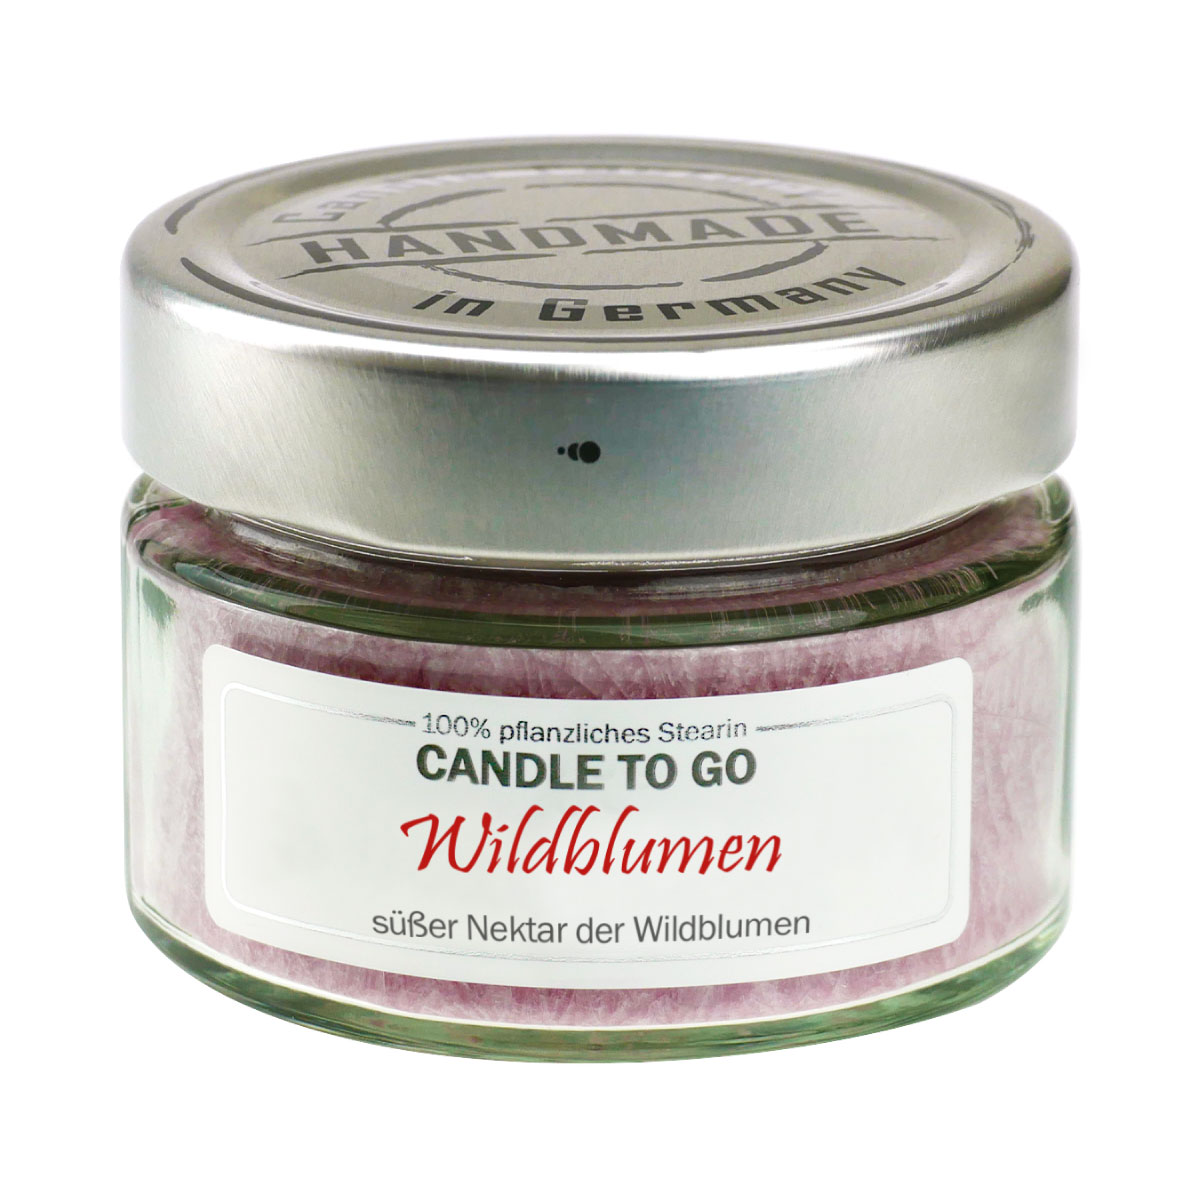 Wildblumen - Candle to Go Duftkerze von Candle Factory